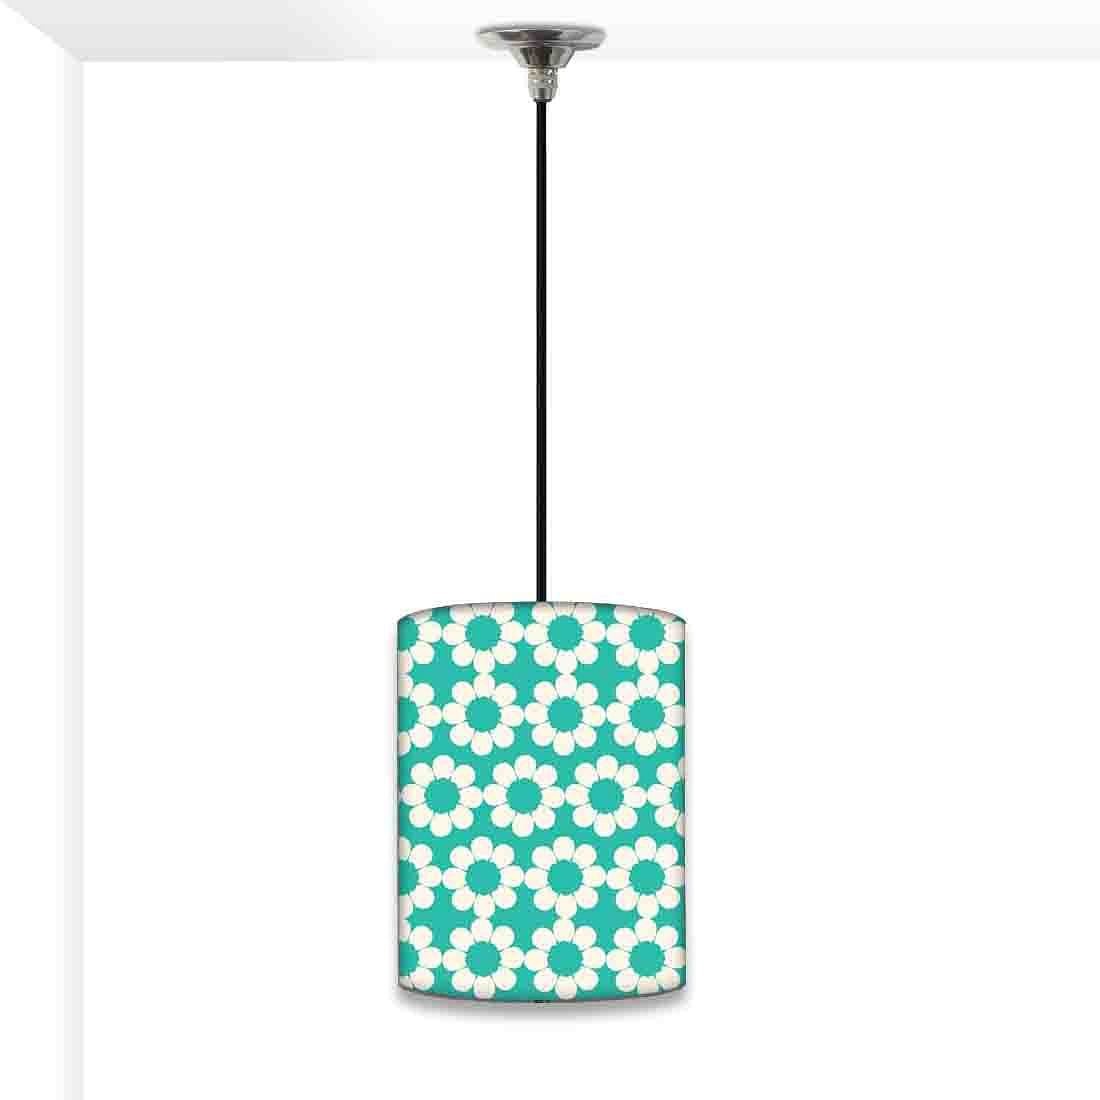 Bedroom Ceiling Pendant Lamp - Green White Flower Nutcase